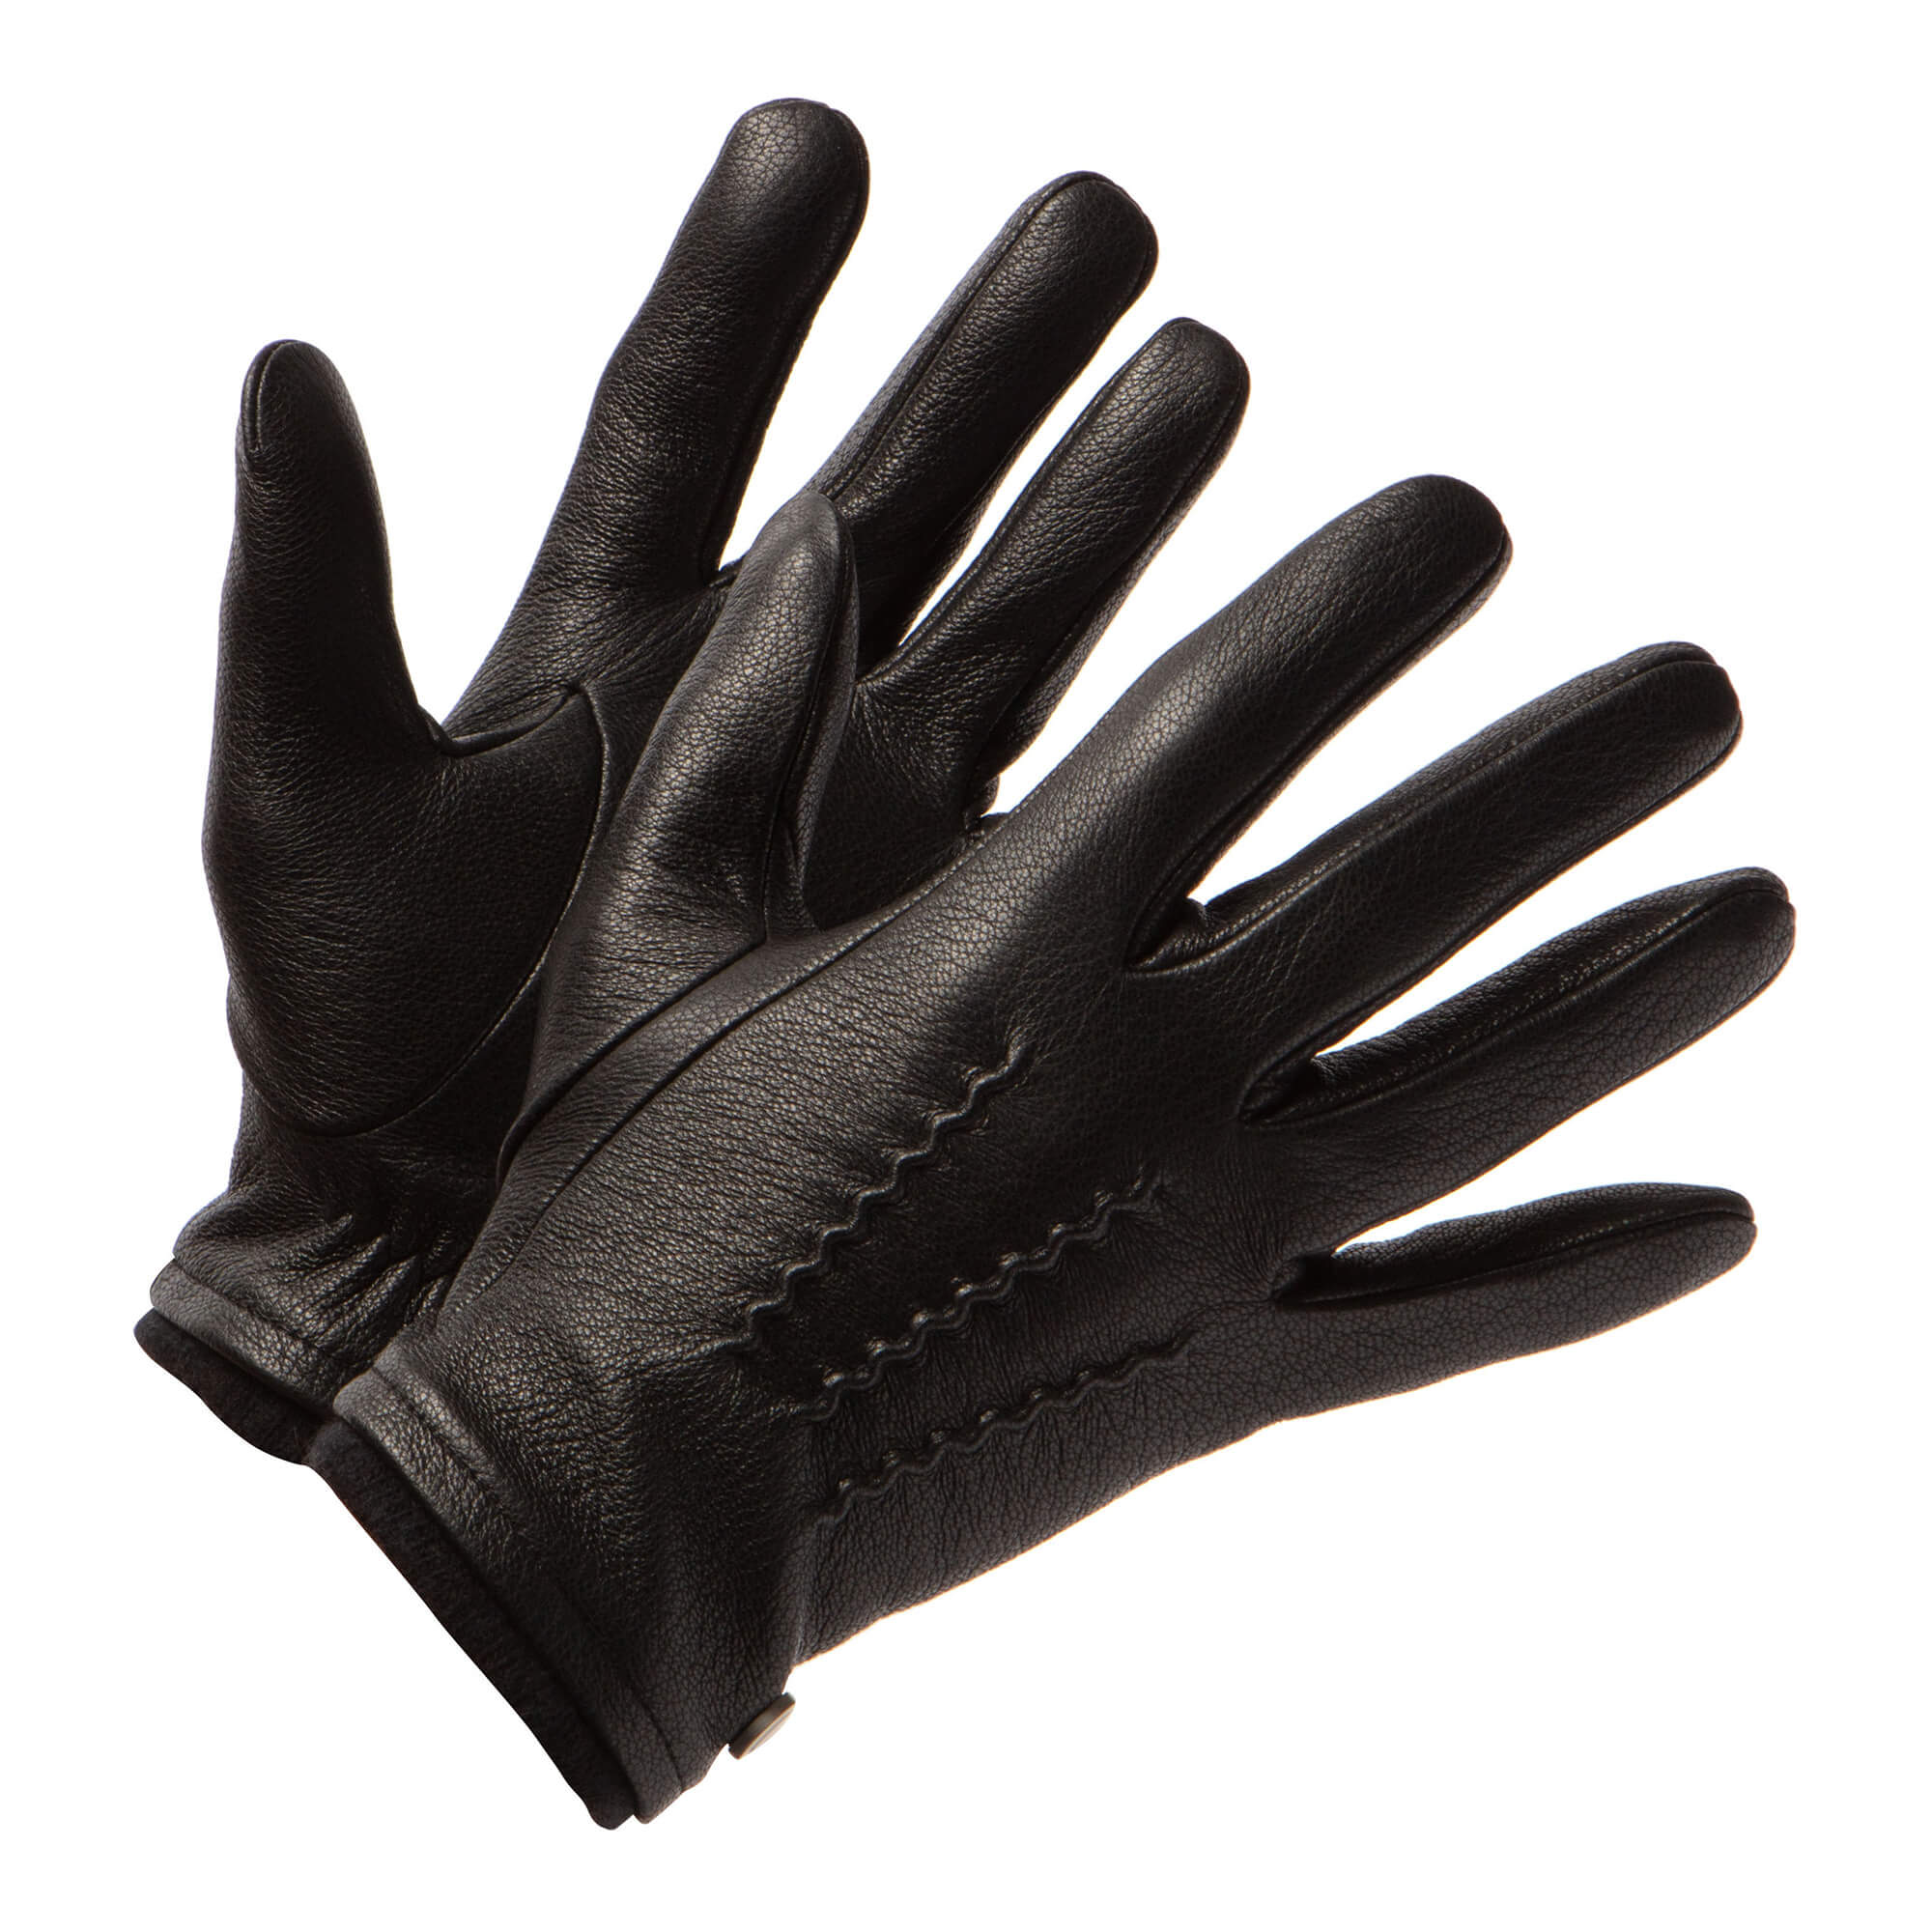 Gants en cuir pour homme, Mi-saison et hiver, de couleur noire avec poignets